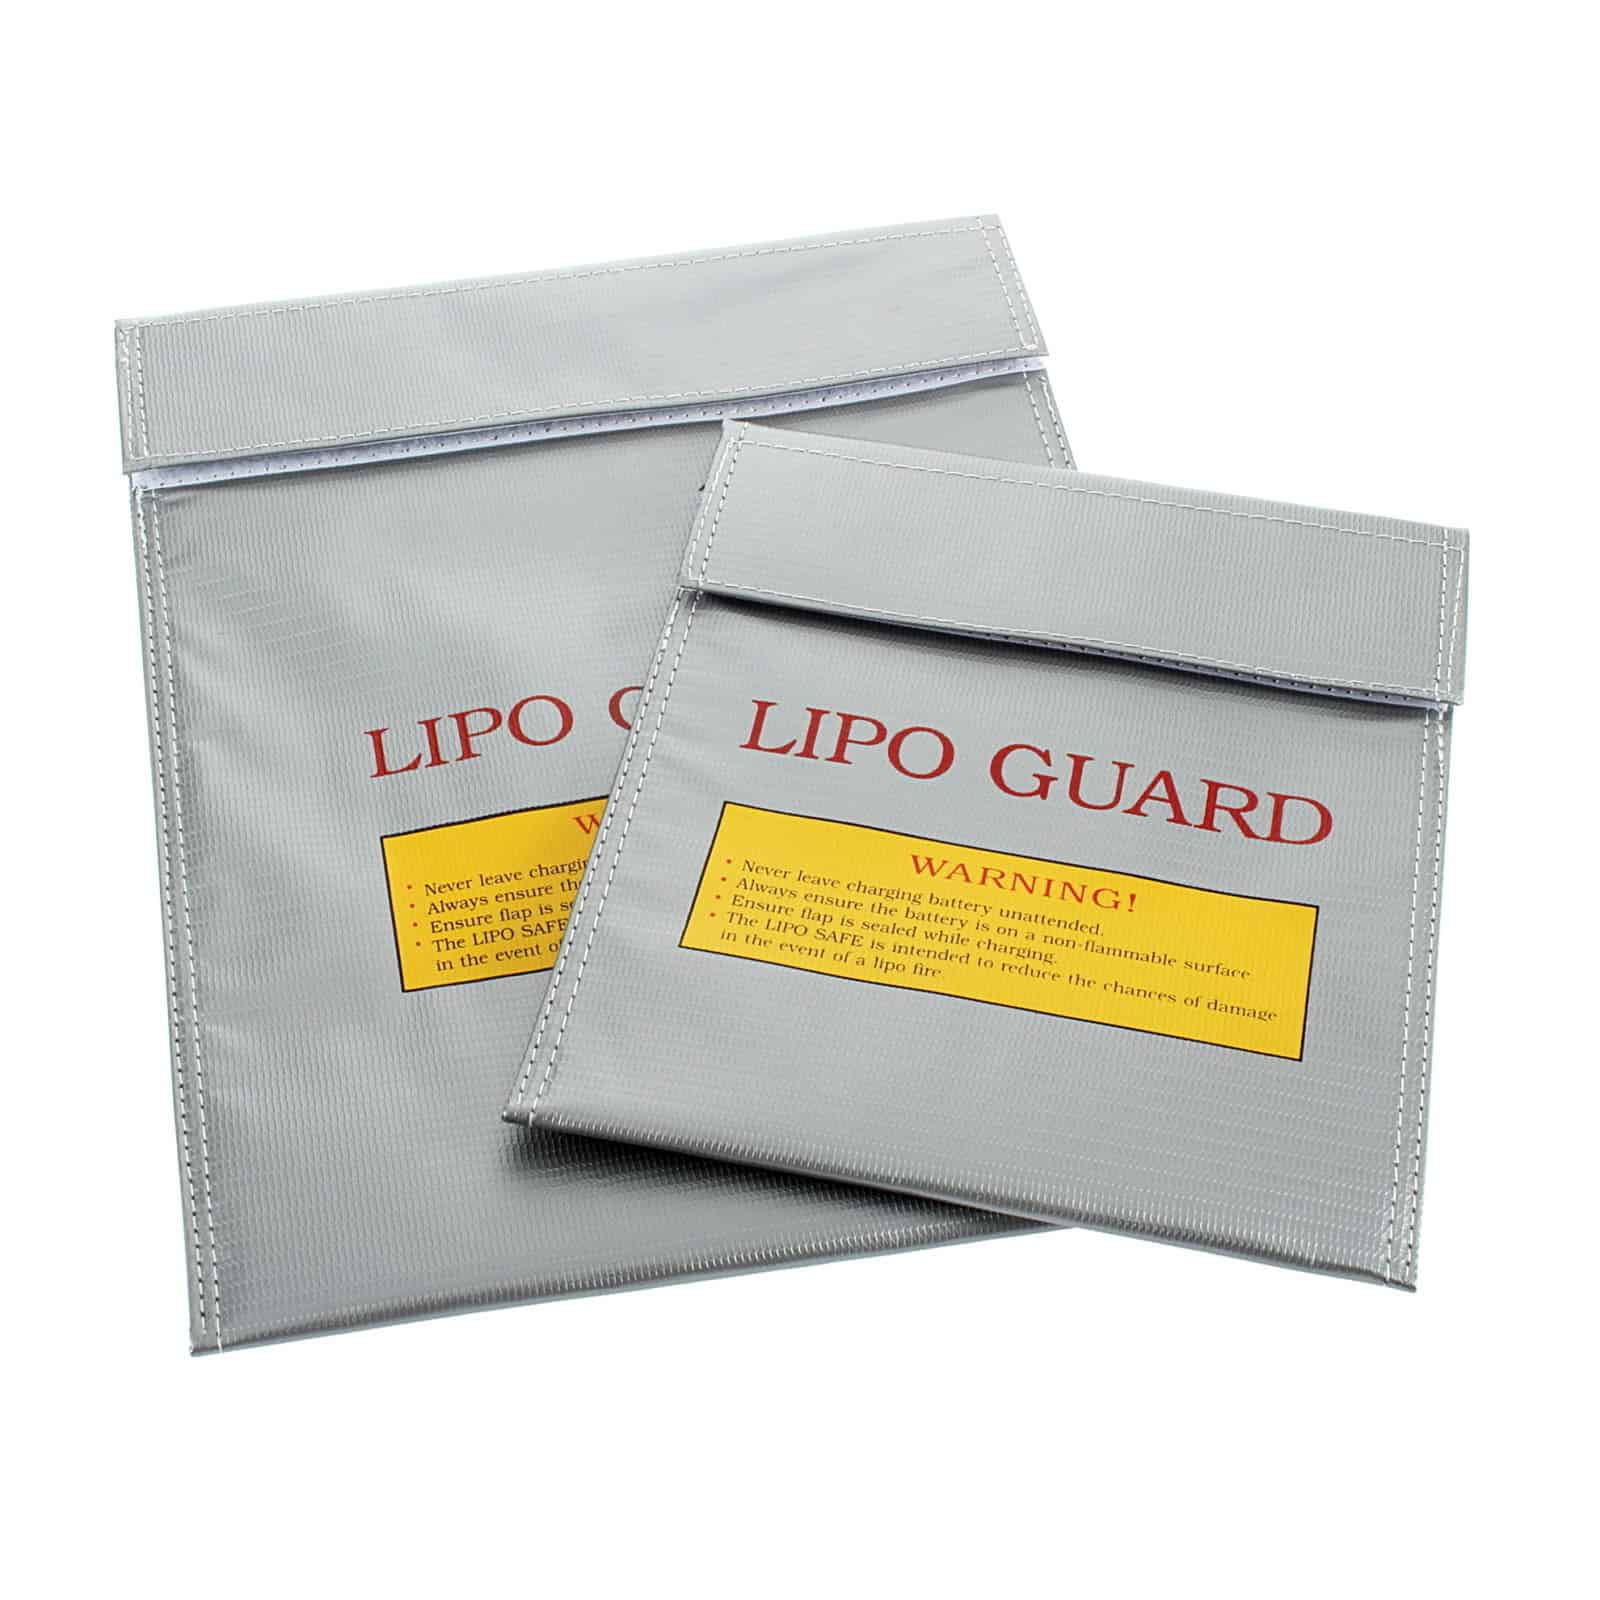 Lipo Guard für nur 2,61 Euro (kostenloser Versand) aus China! Bringt Sicherheit beim Aufladen von Akkus (LiPo)!